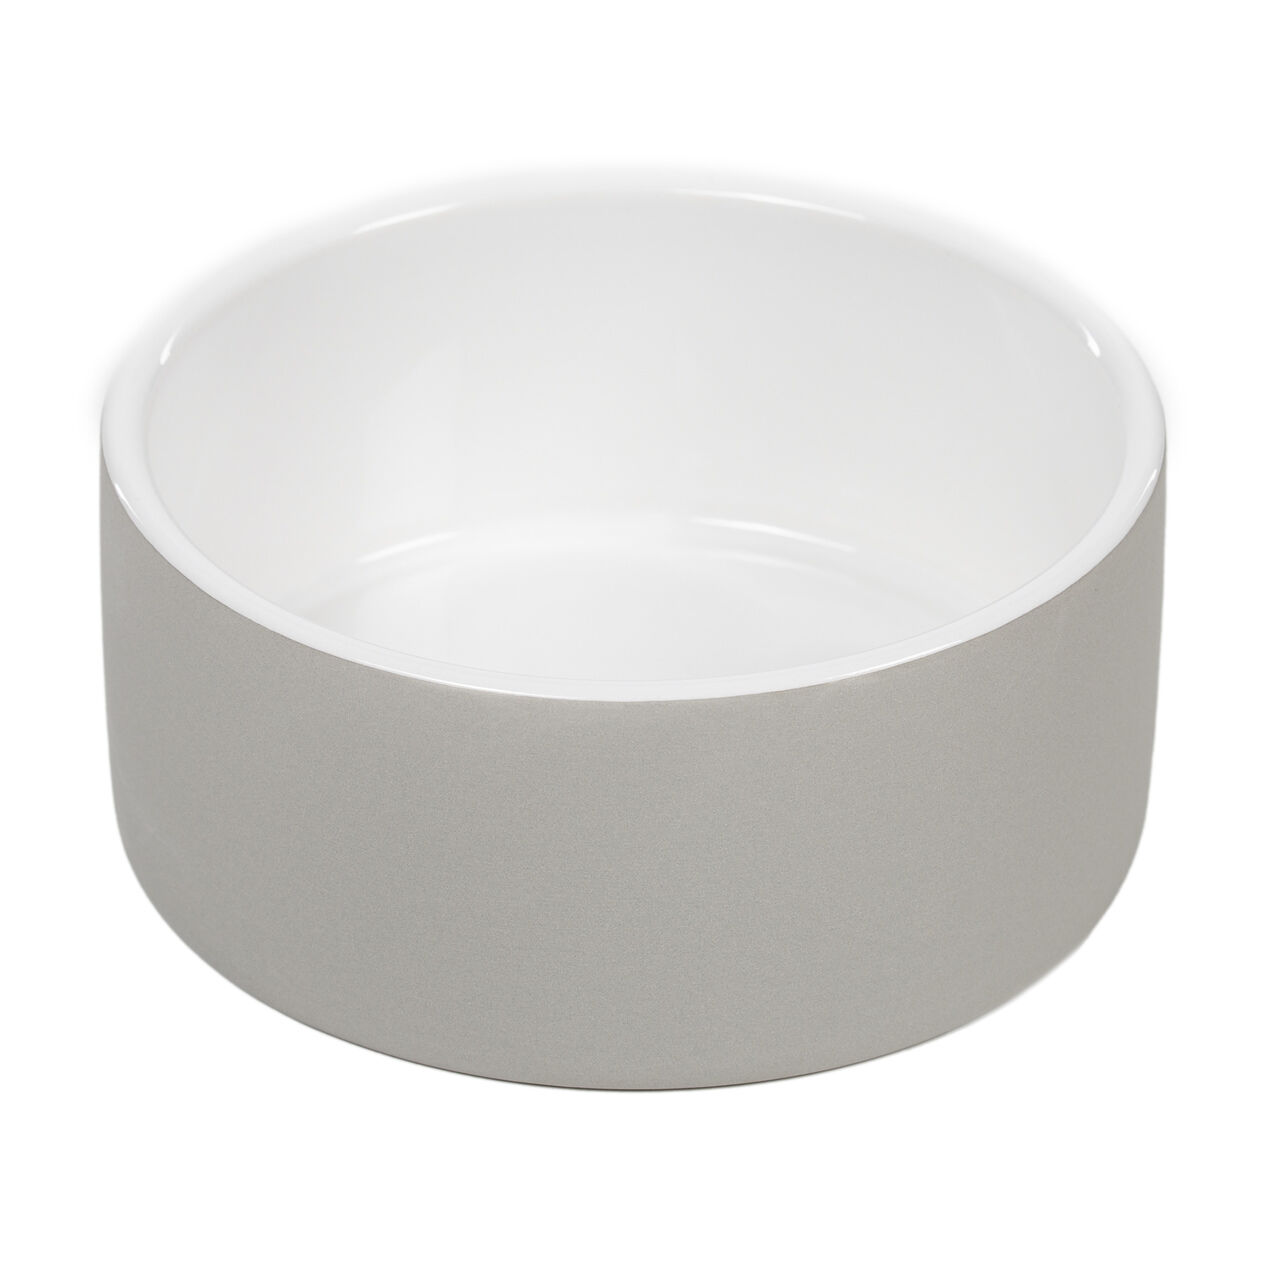 PAIKKA-Cool-Bowl-betongrau1-60-46025